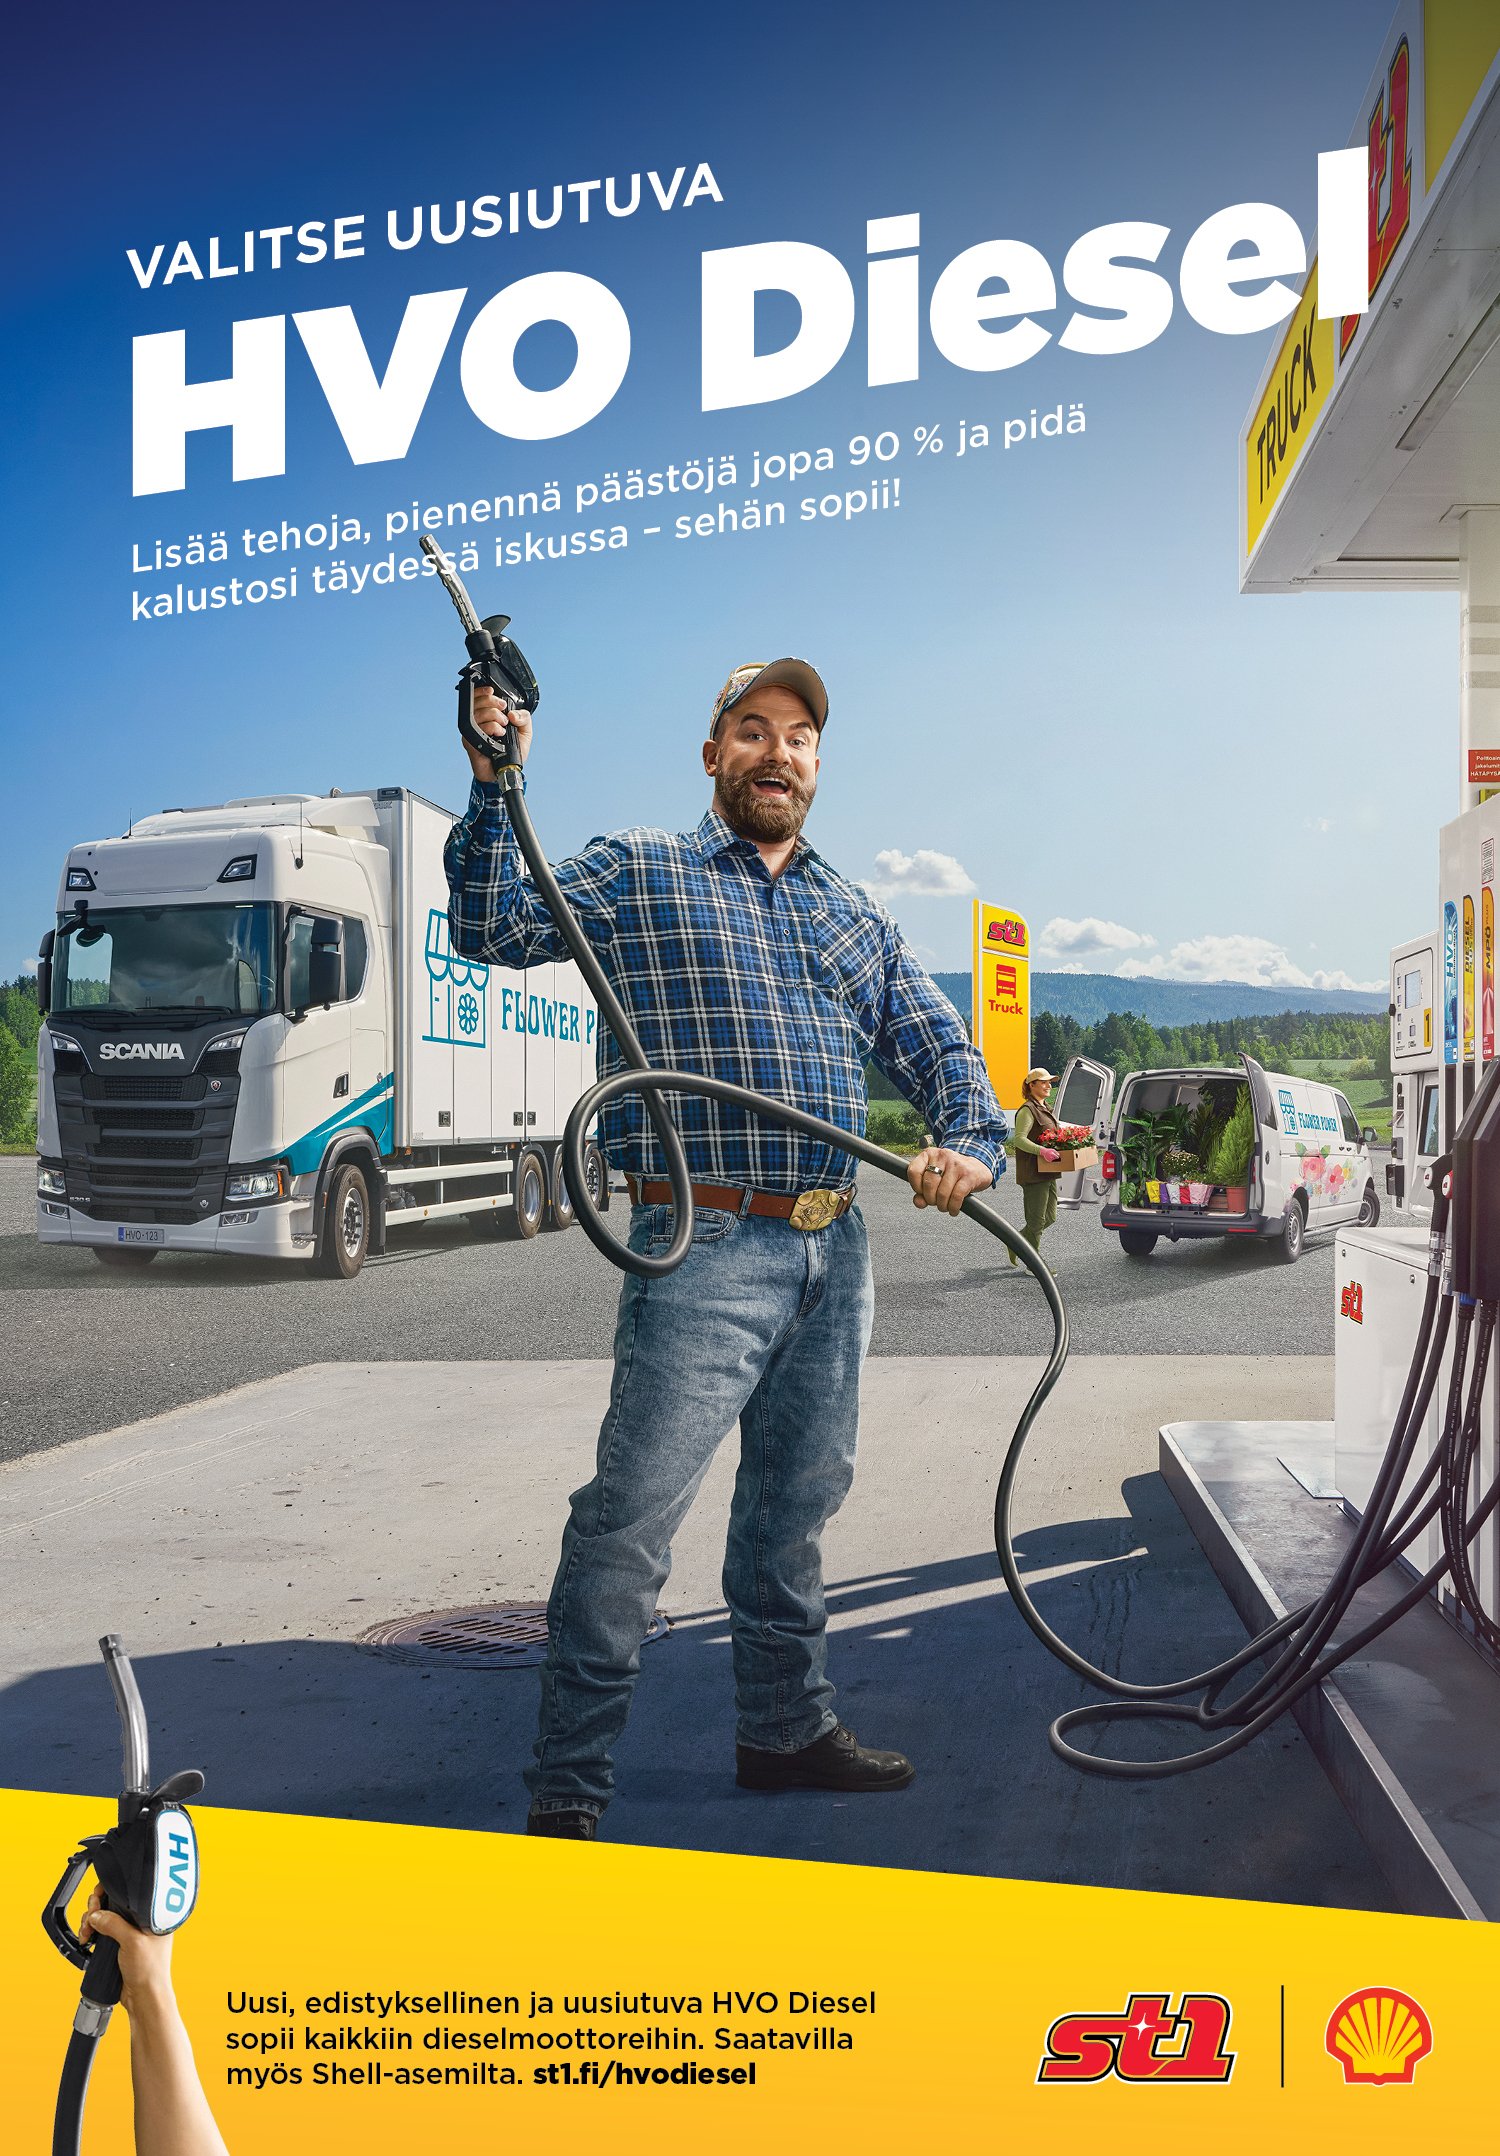 St1 - HVO Diesel